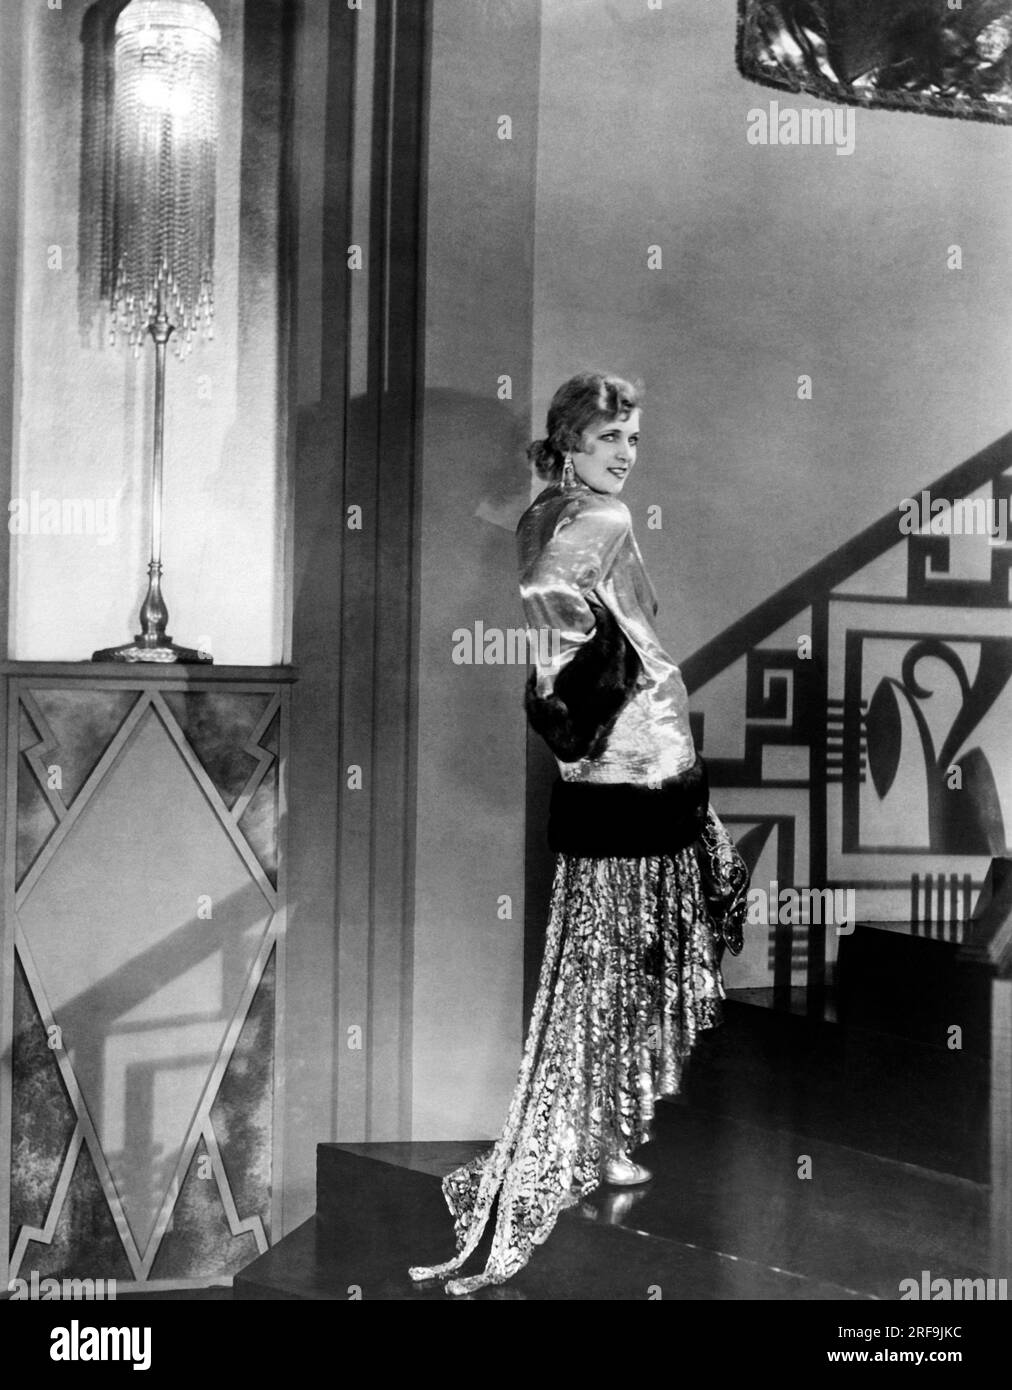 Hollywood, California: c. 1929 la star russa del cinema Olga Baclanova modella un abito da sera in tessuto d'oro, paillettes, cristalli e un pizzo d'oro. Lo indossa con un cappotto dorato lungo la punta delle dita e bordato con pelliccia marrone zibellino. Foto Stock